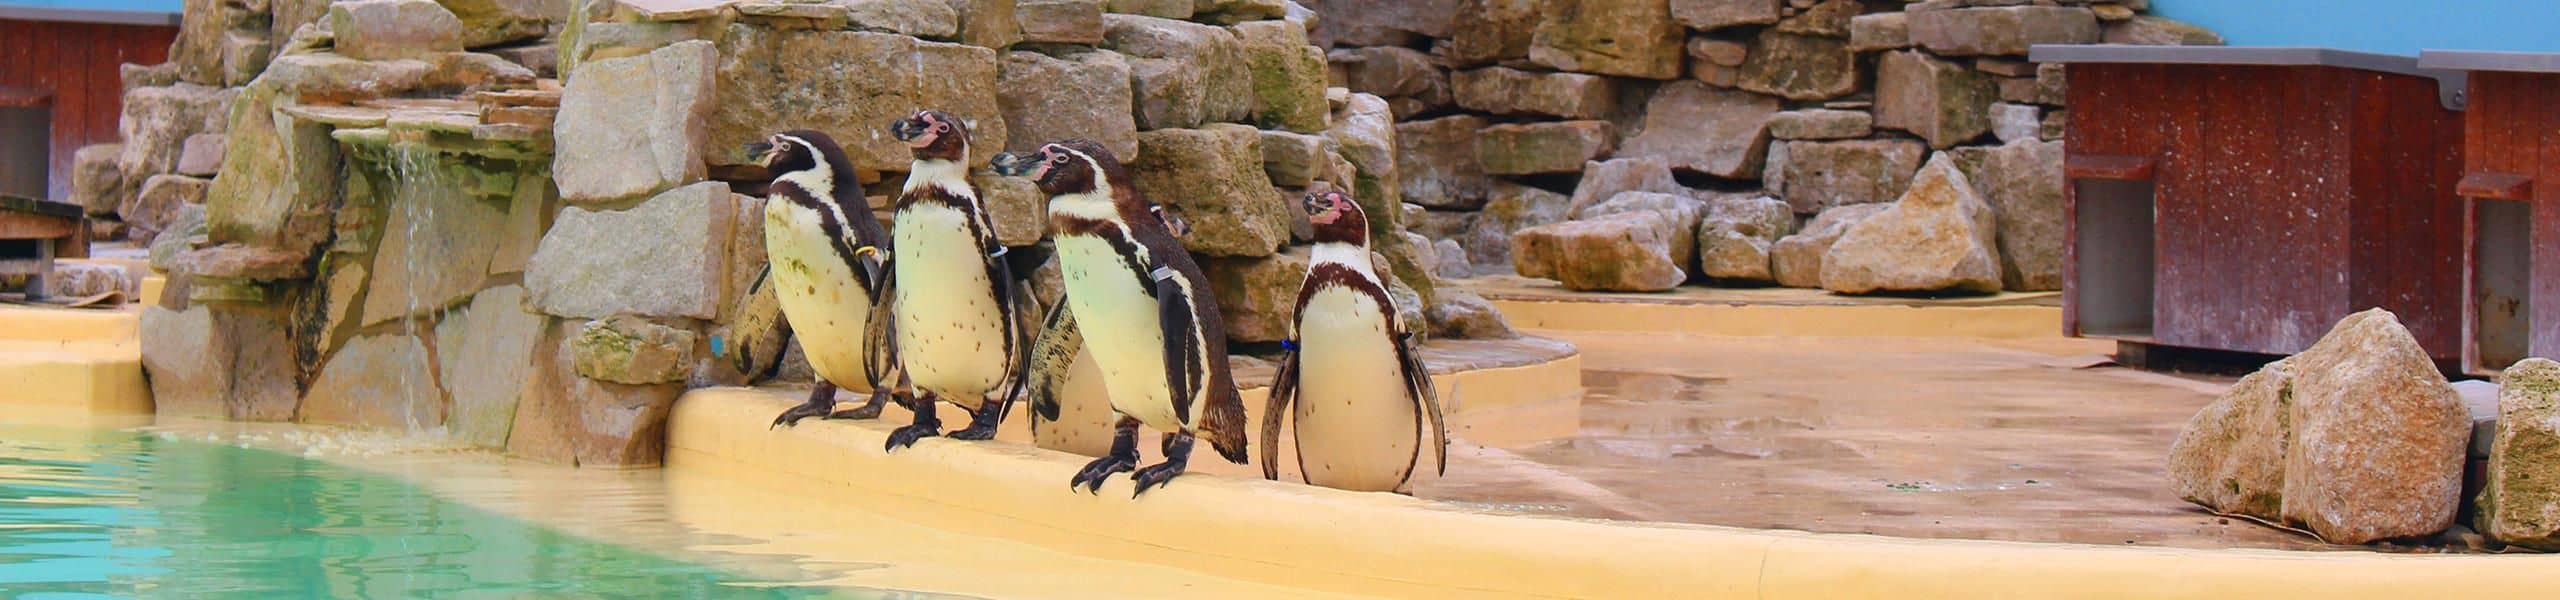 Humboldt Penguins Feeding | Paultons Park